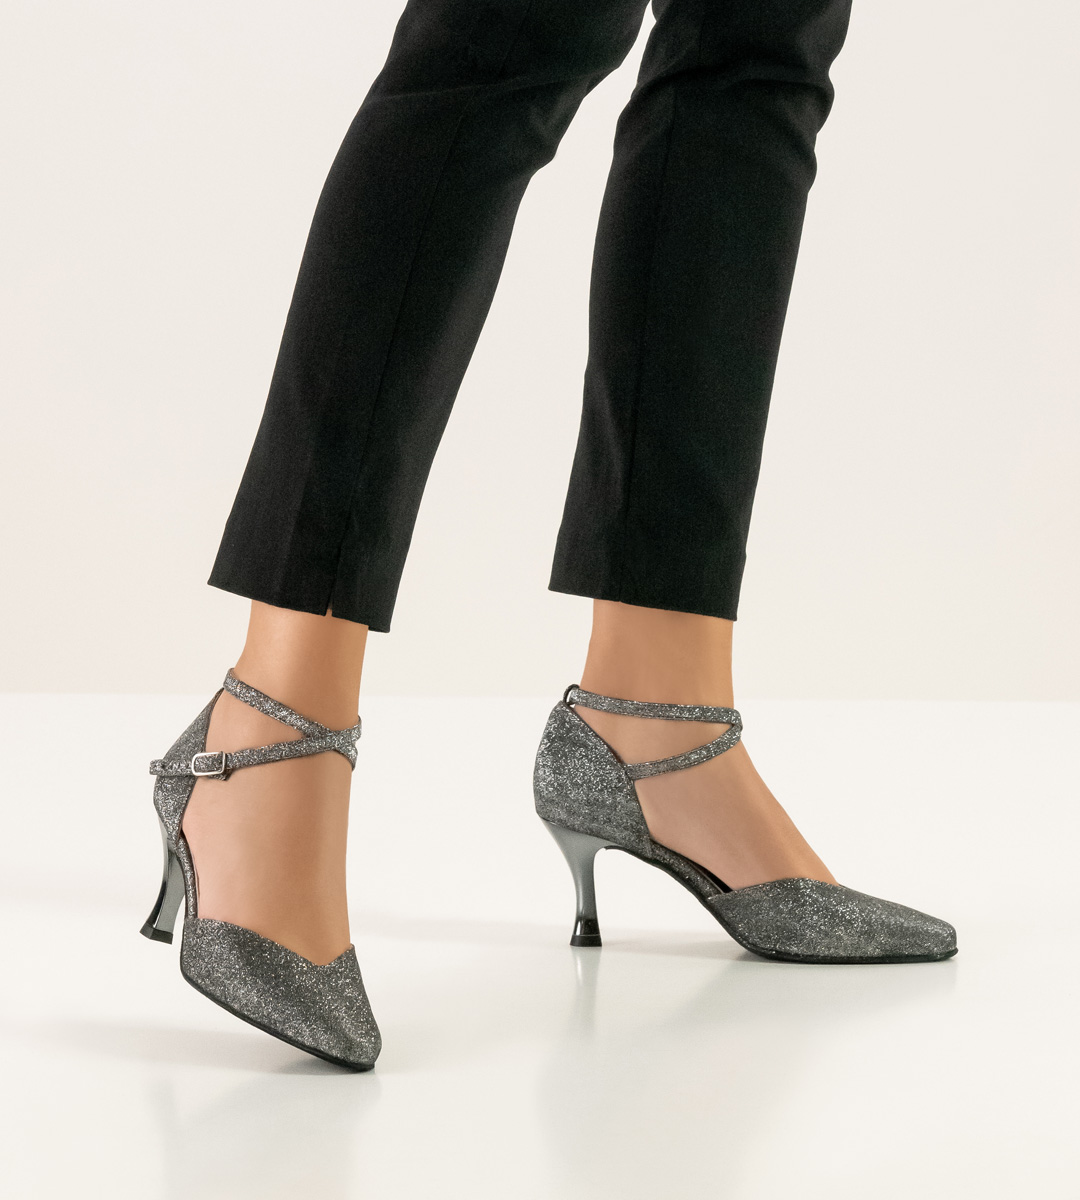 Werner Kern ladies' dance shoe with metallic heel